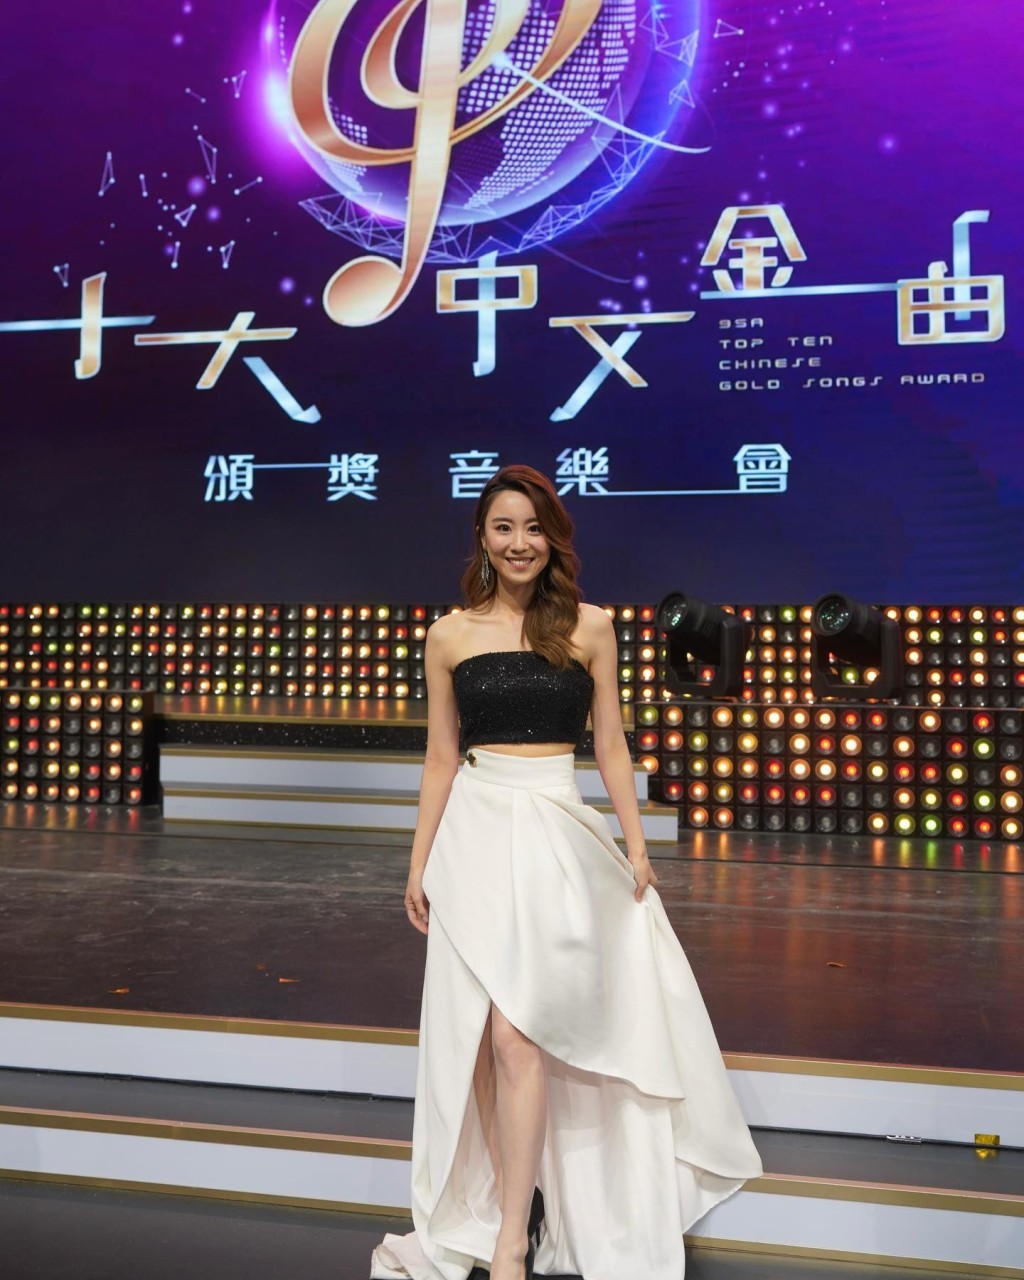 林靜莉曾為《廣播九十五周年十大中文金曲》擔任主持。